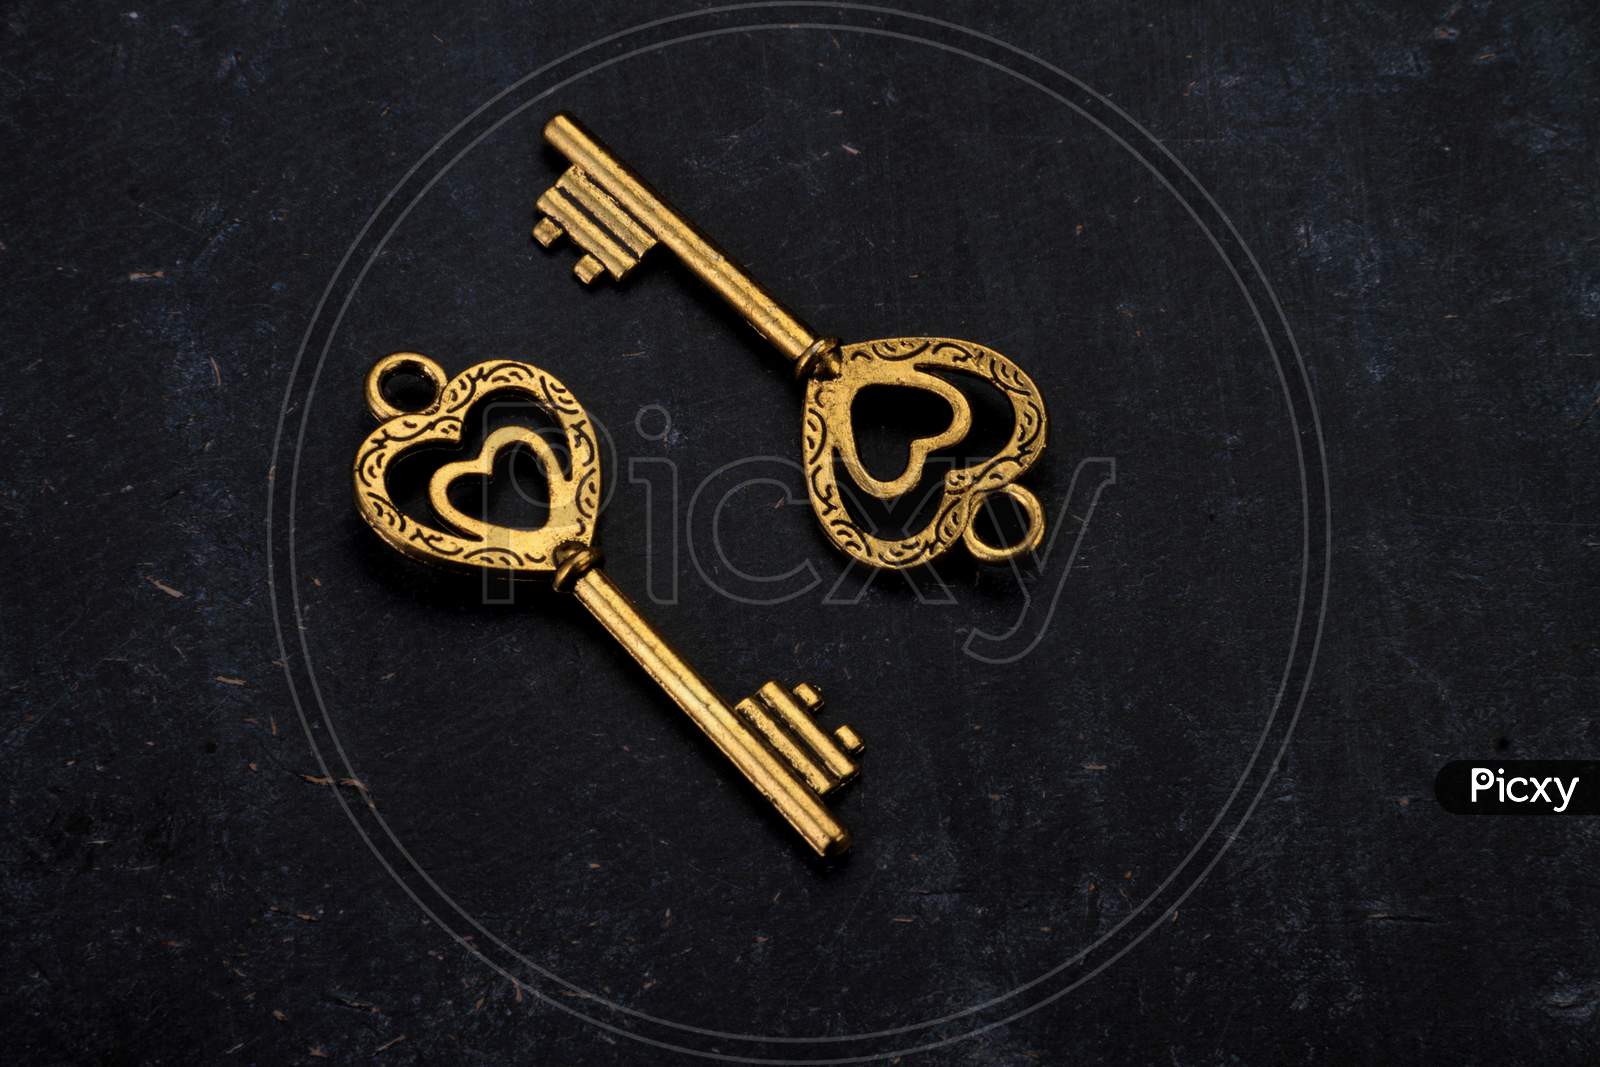 Unlock My Heart - Two Heart Shaped Golden Vintage Keys